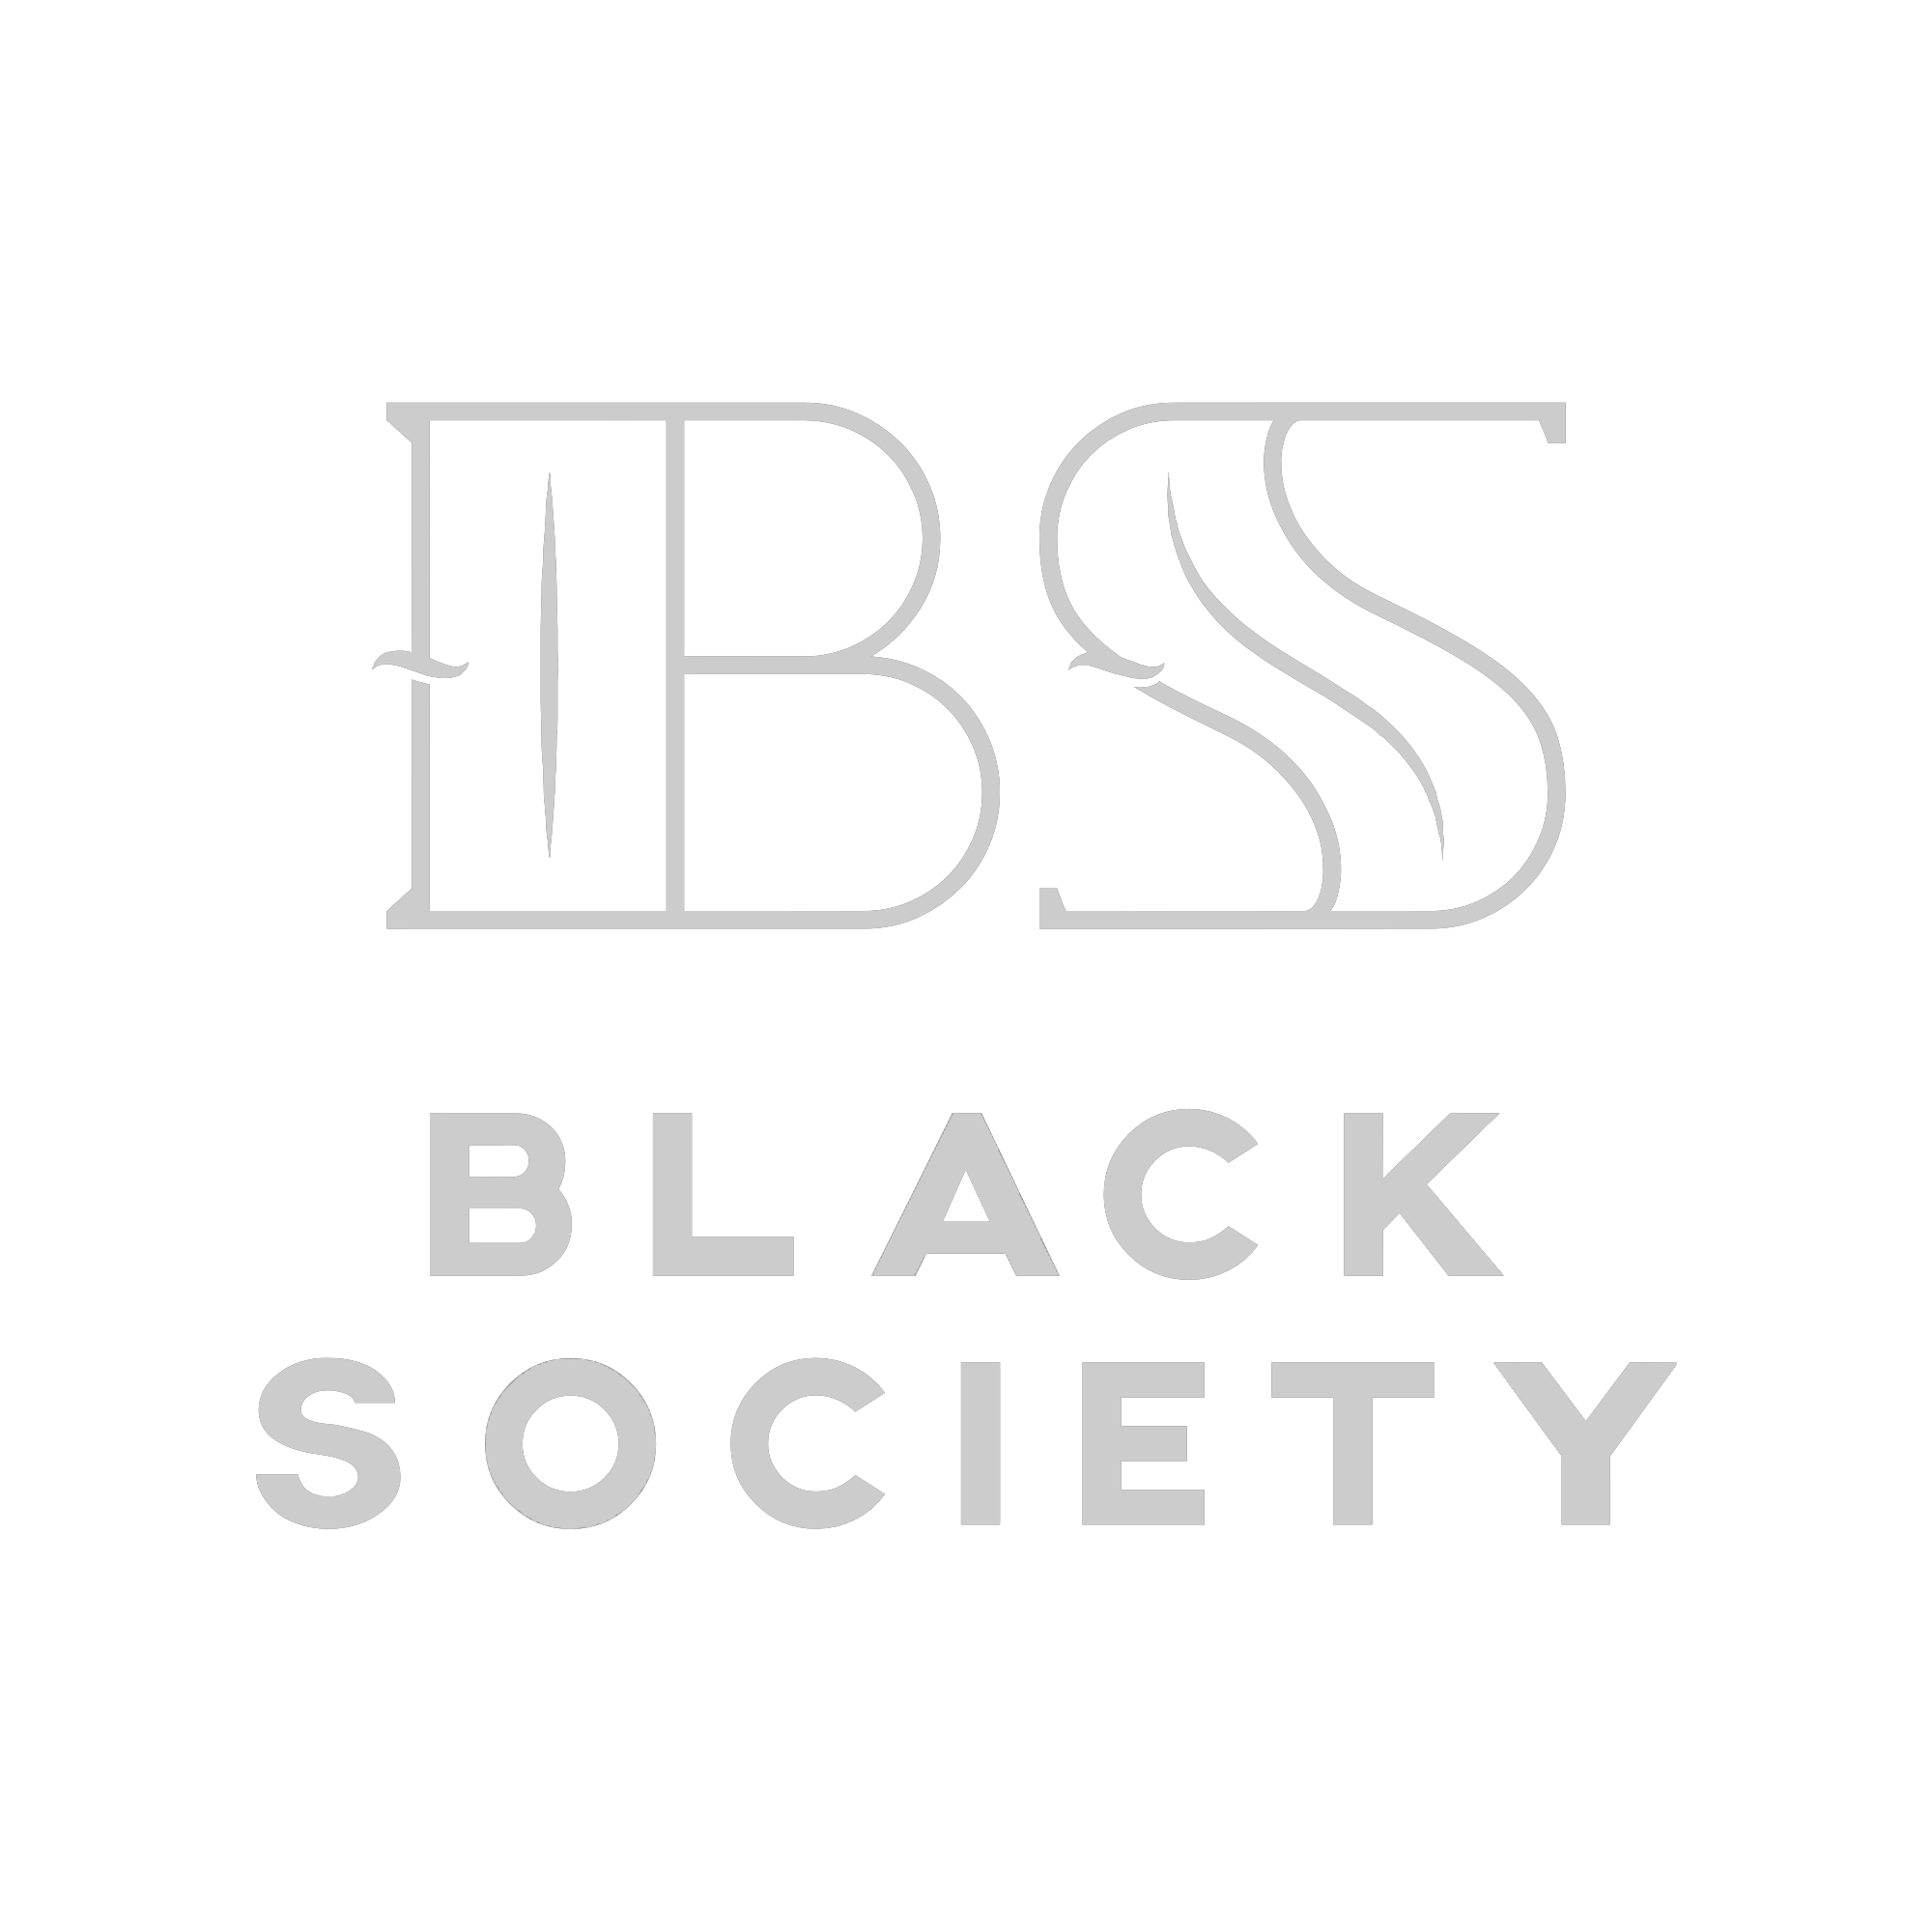 Black Society